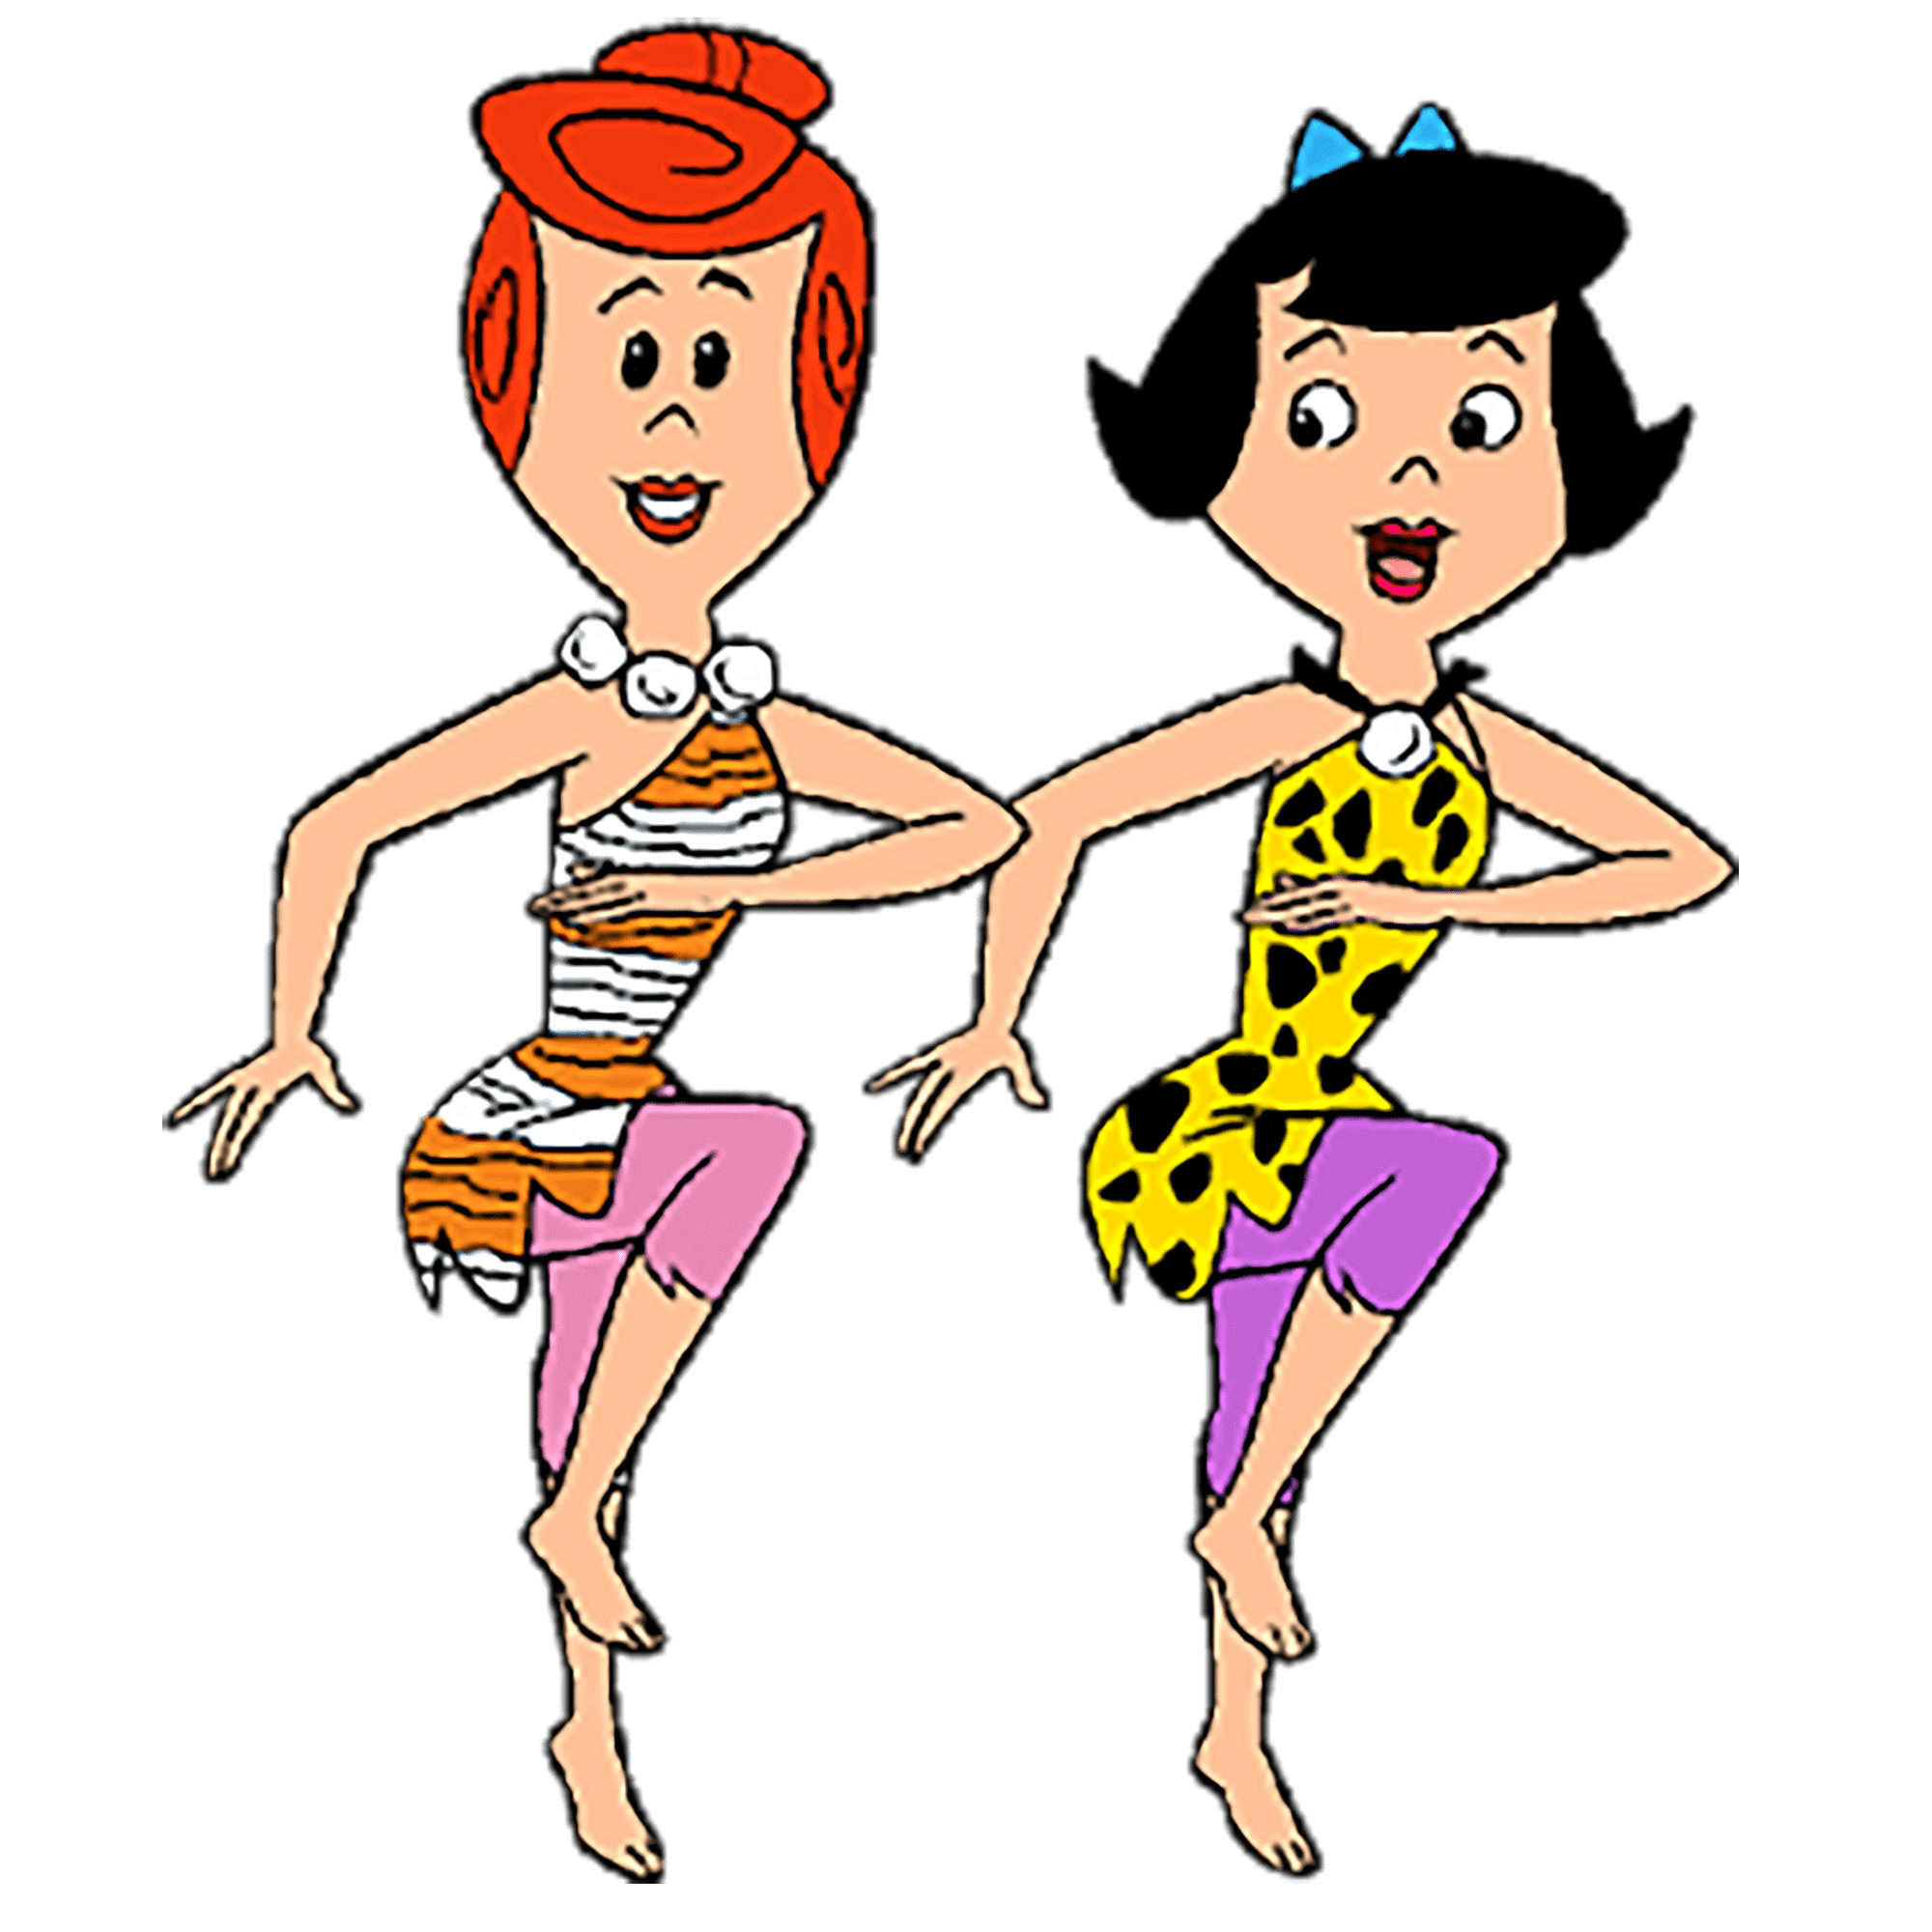 Images of pebbles flintstone 🌈 Flintstones Clip Art Cartoon 